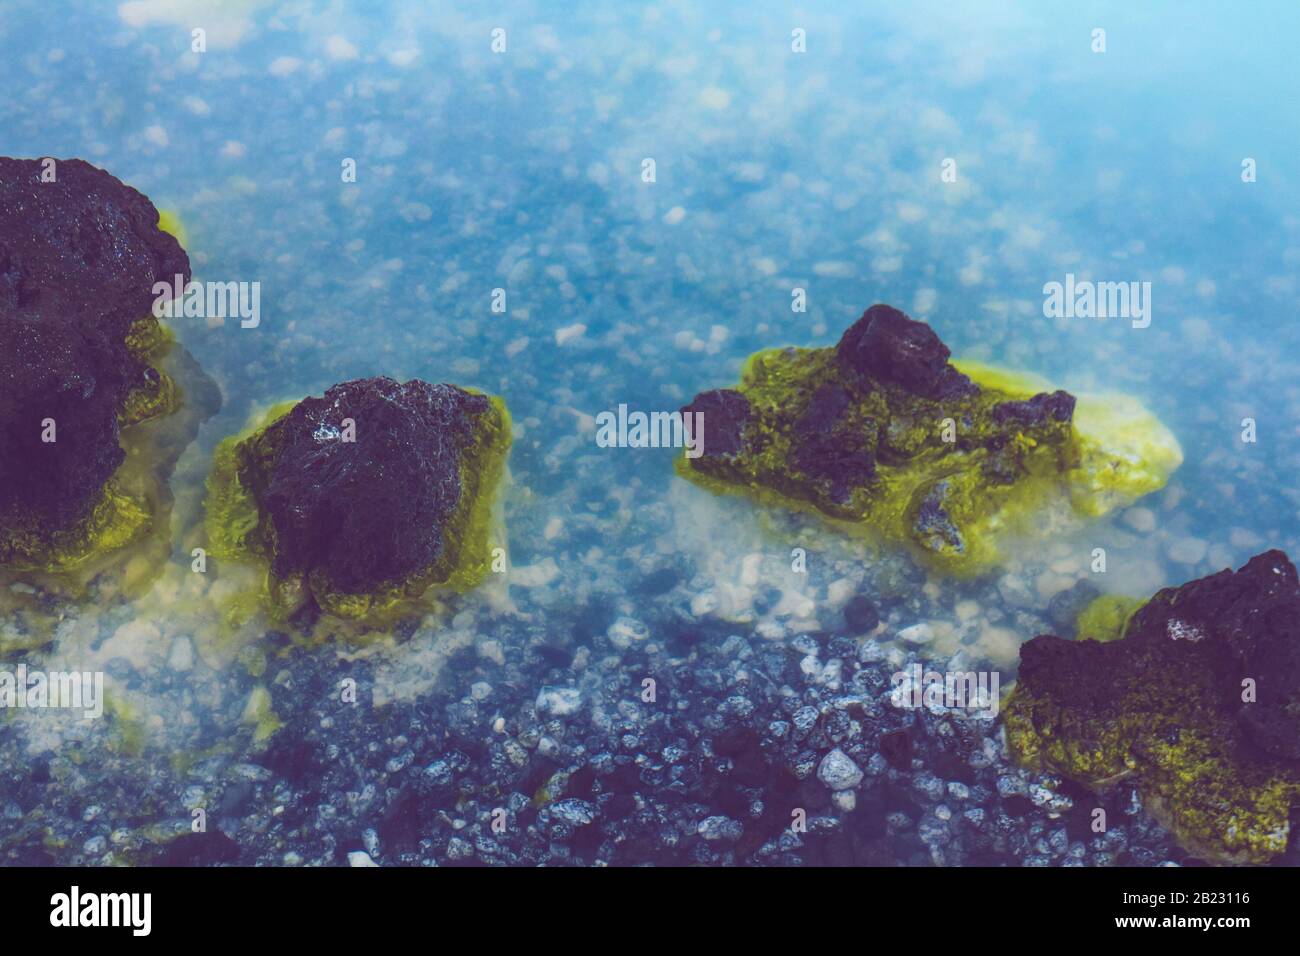 Details zu den milchigen Gewässern und schwefelgefärbten Felsen der Blauen Lagune von Island, einer heißen Quelle mit Kieselsäure, die für Spa-Behandlungen verwendet wird. Stockfoto